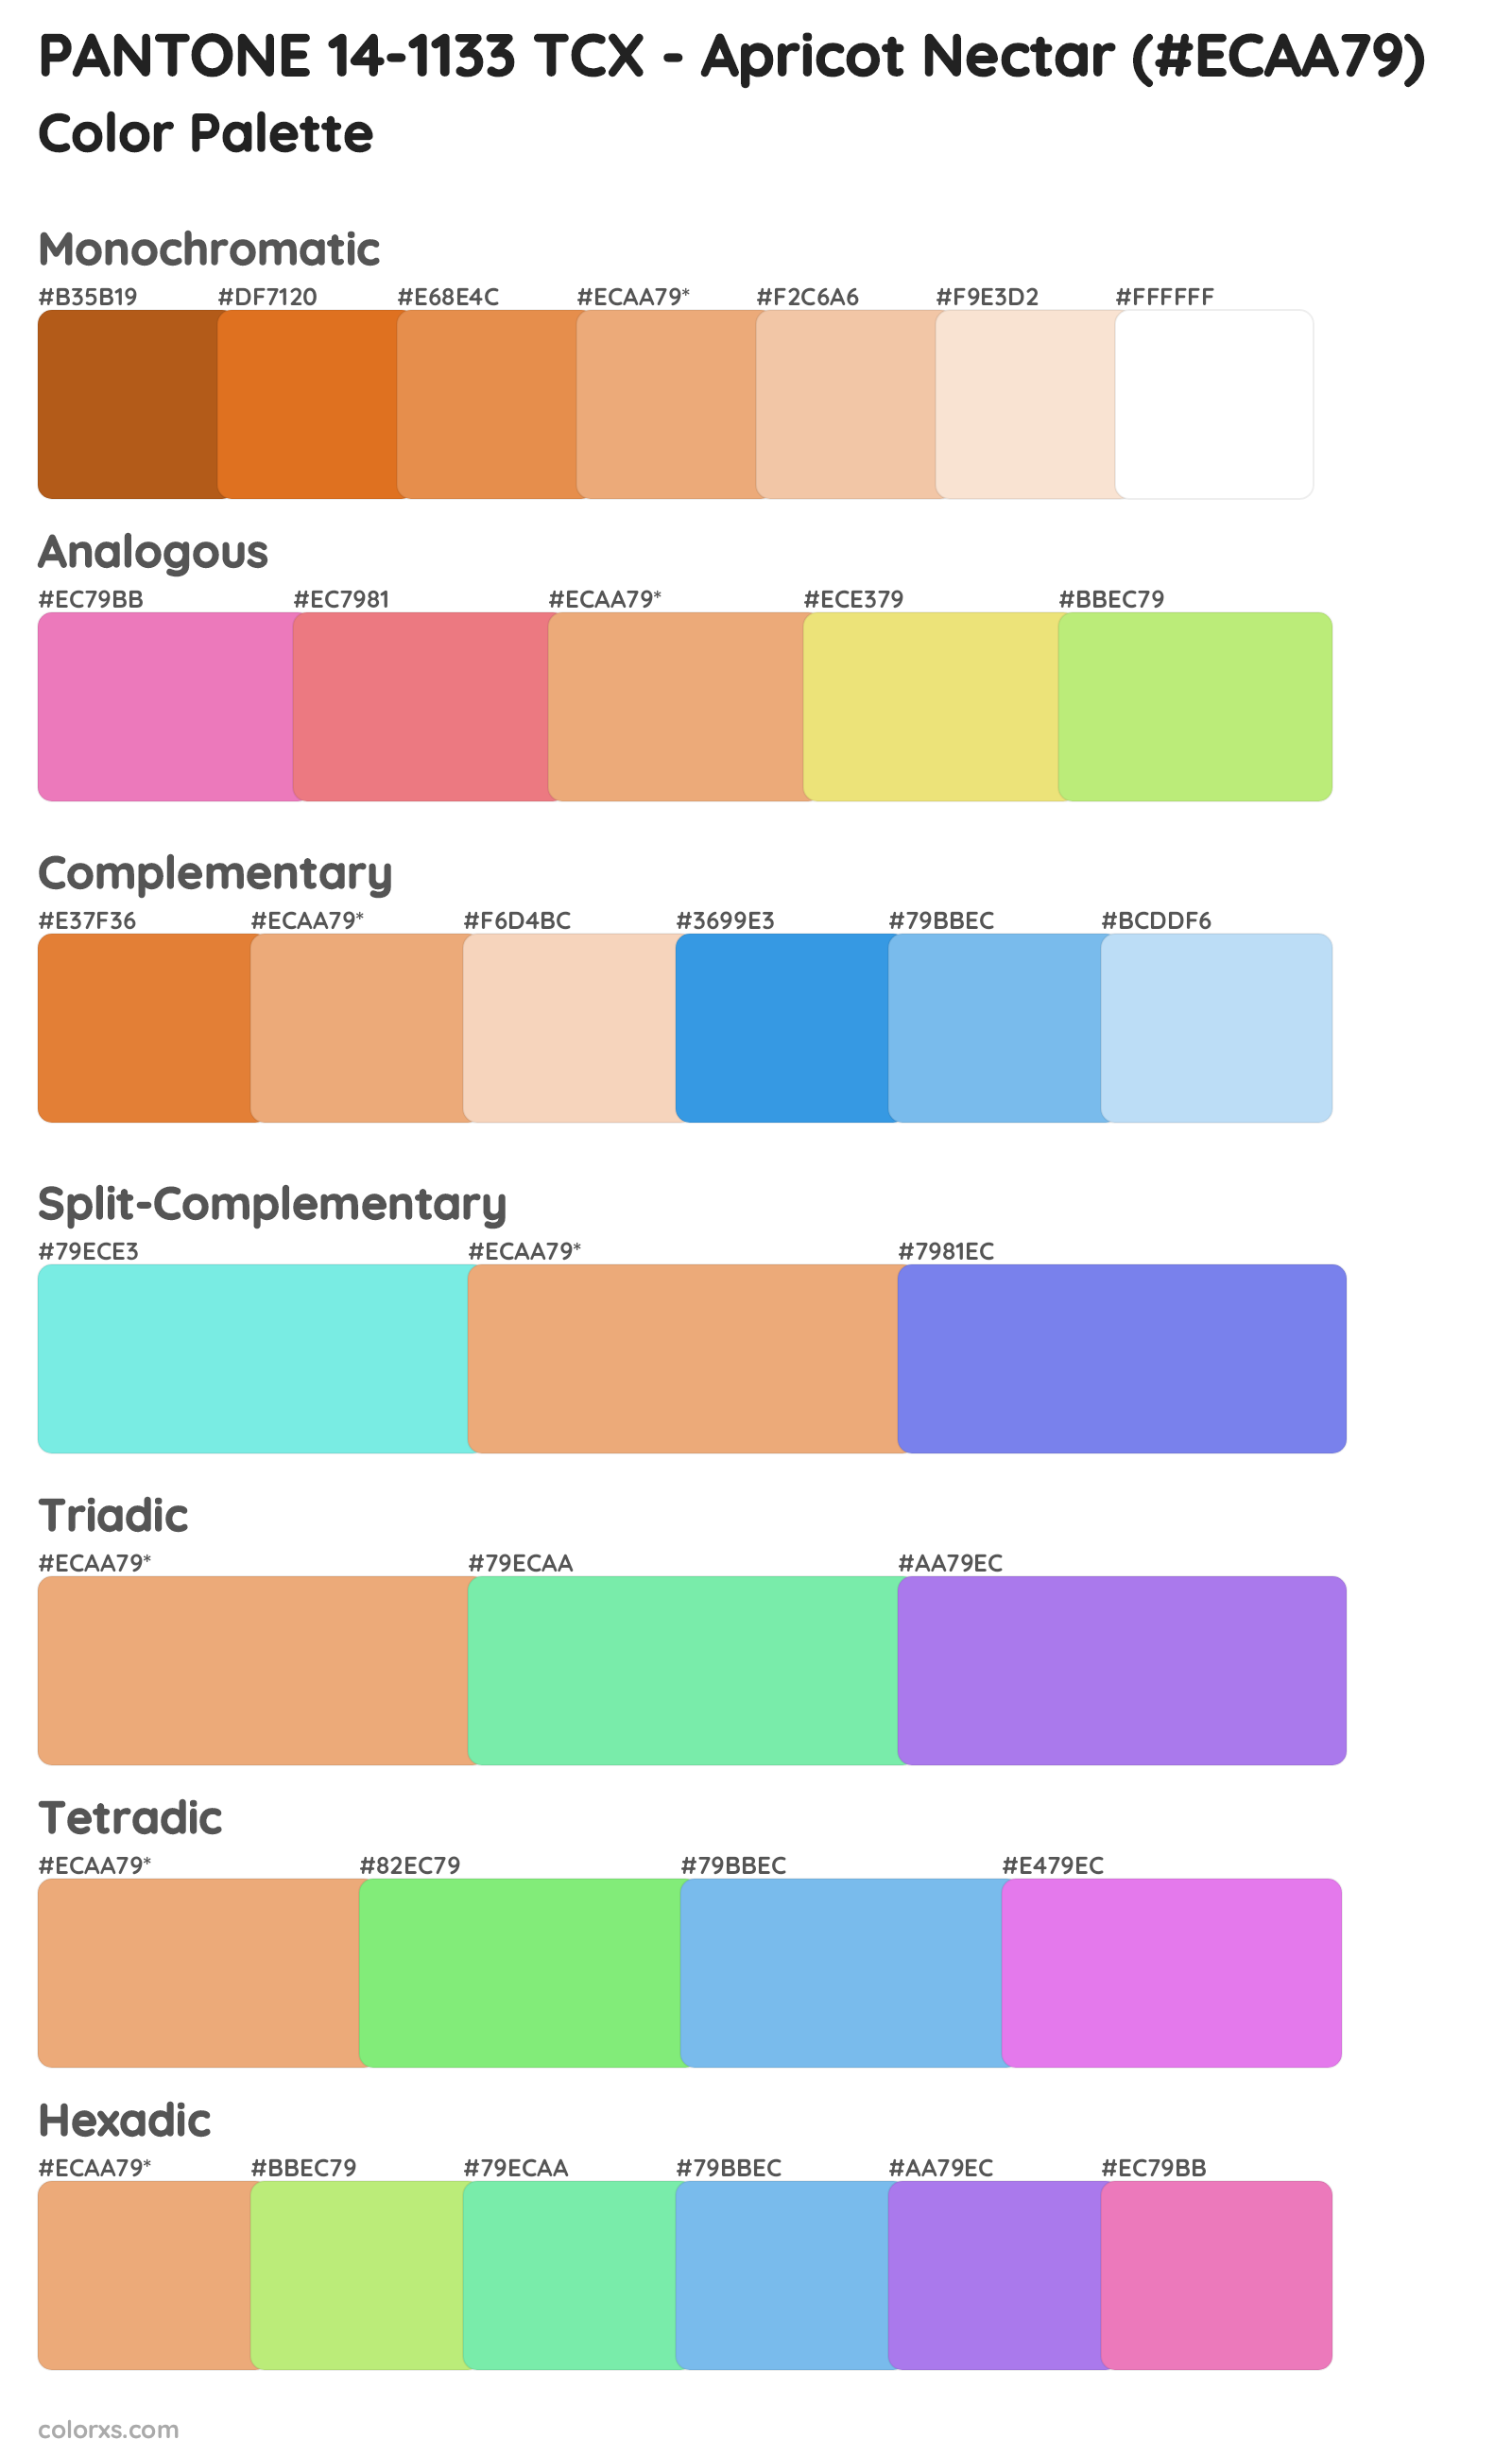 PANTONE 14-1133 TCX - Apricot Nectar Color Scheme Palettes